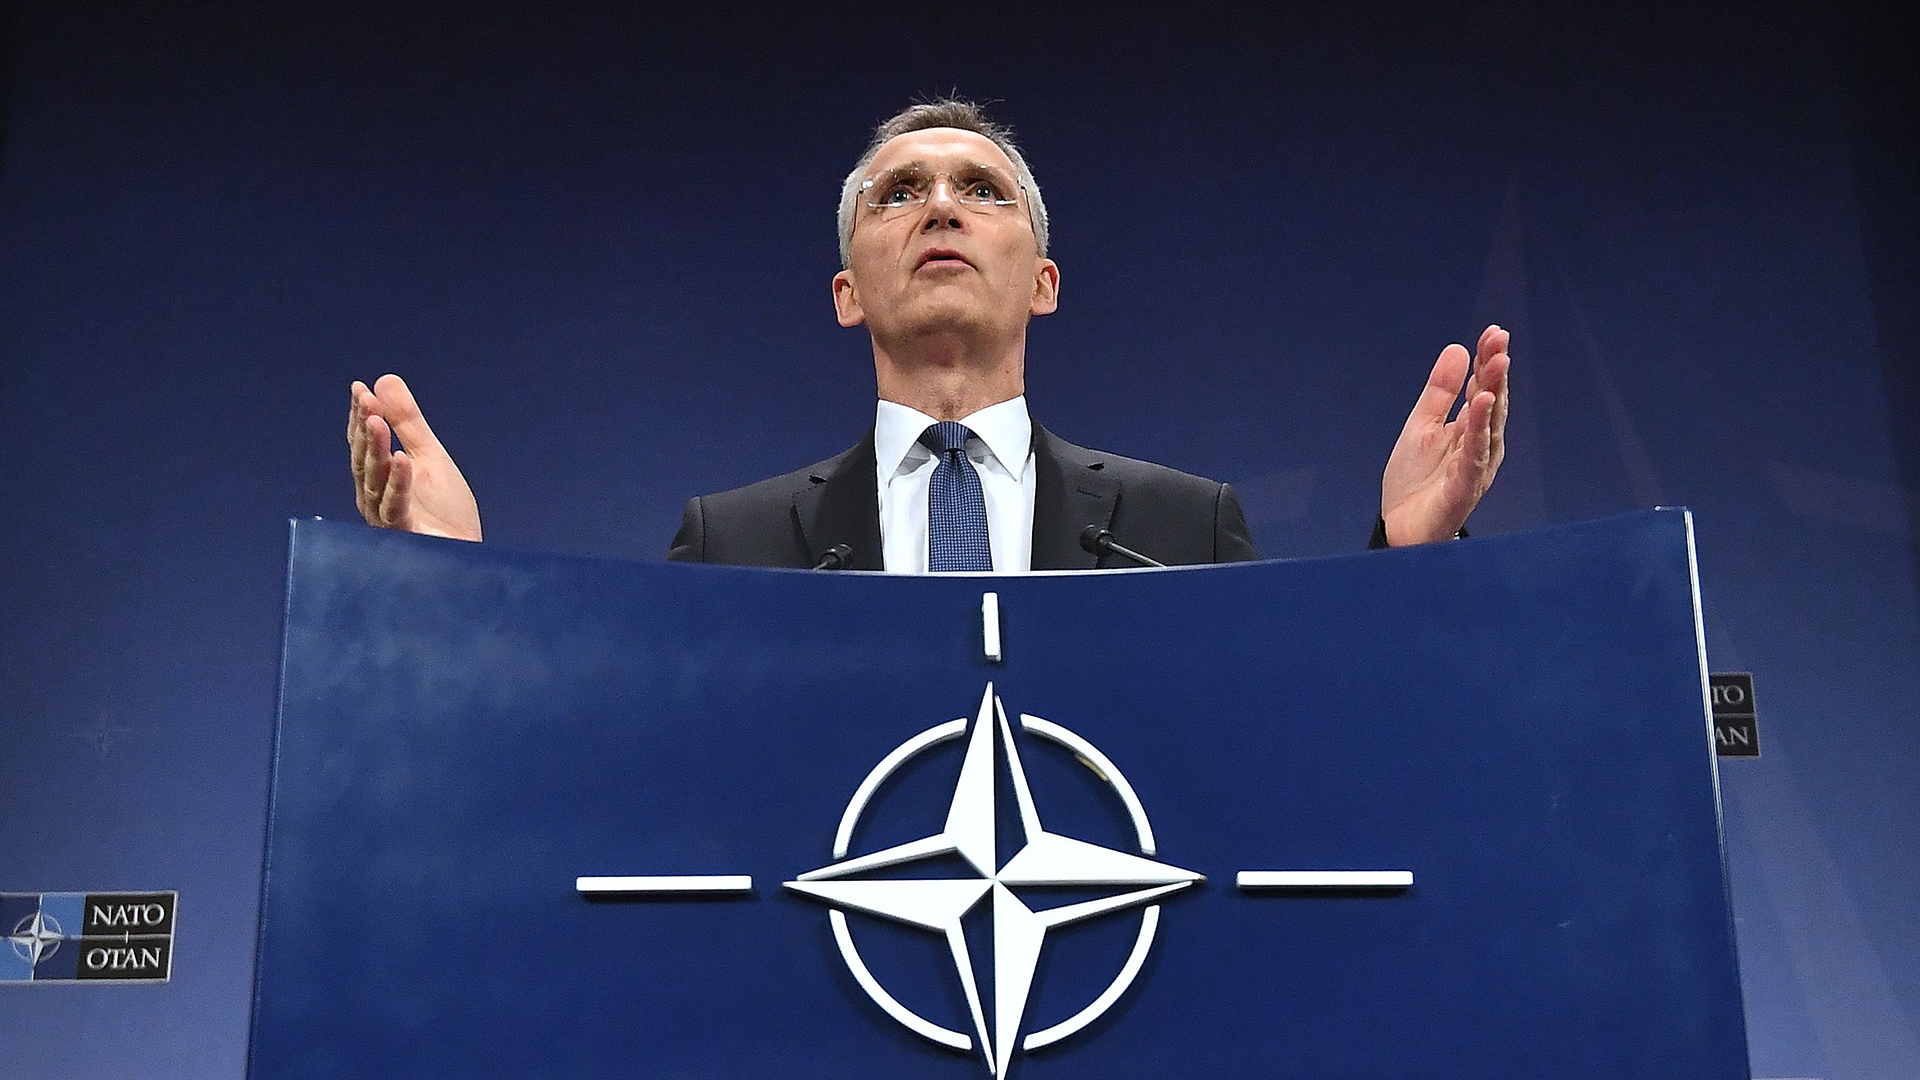 Auch NATO weist russische Diplomaten aus